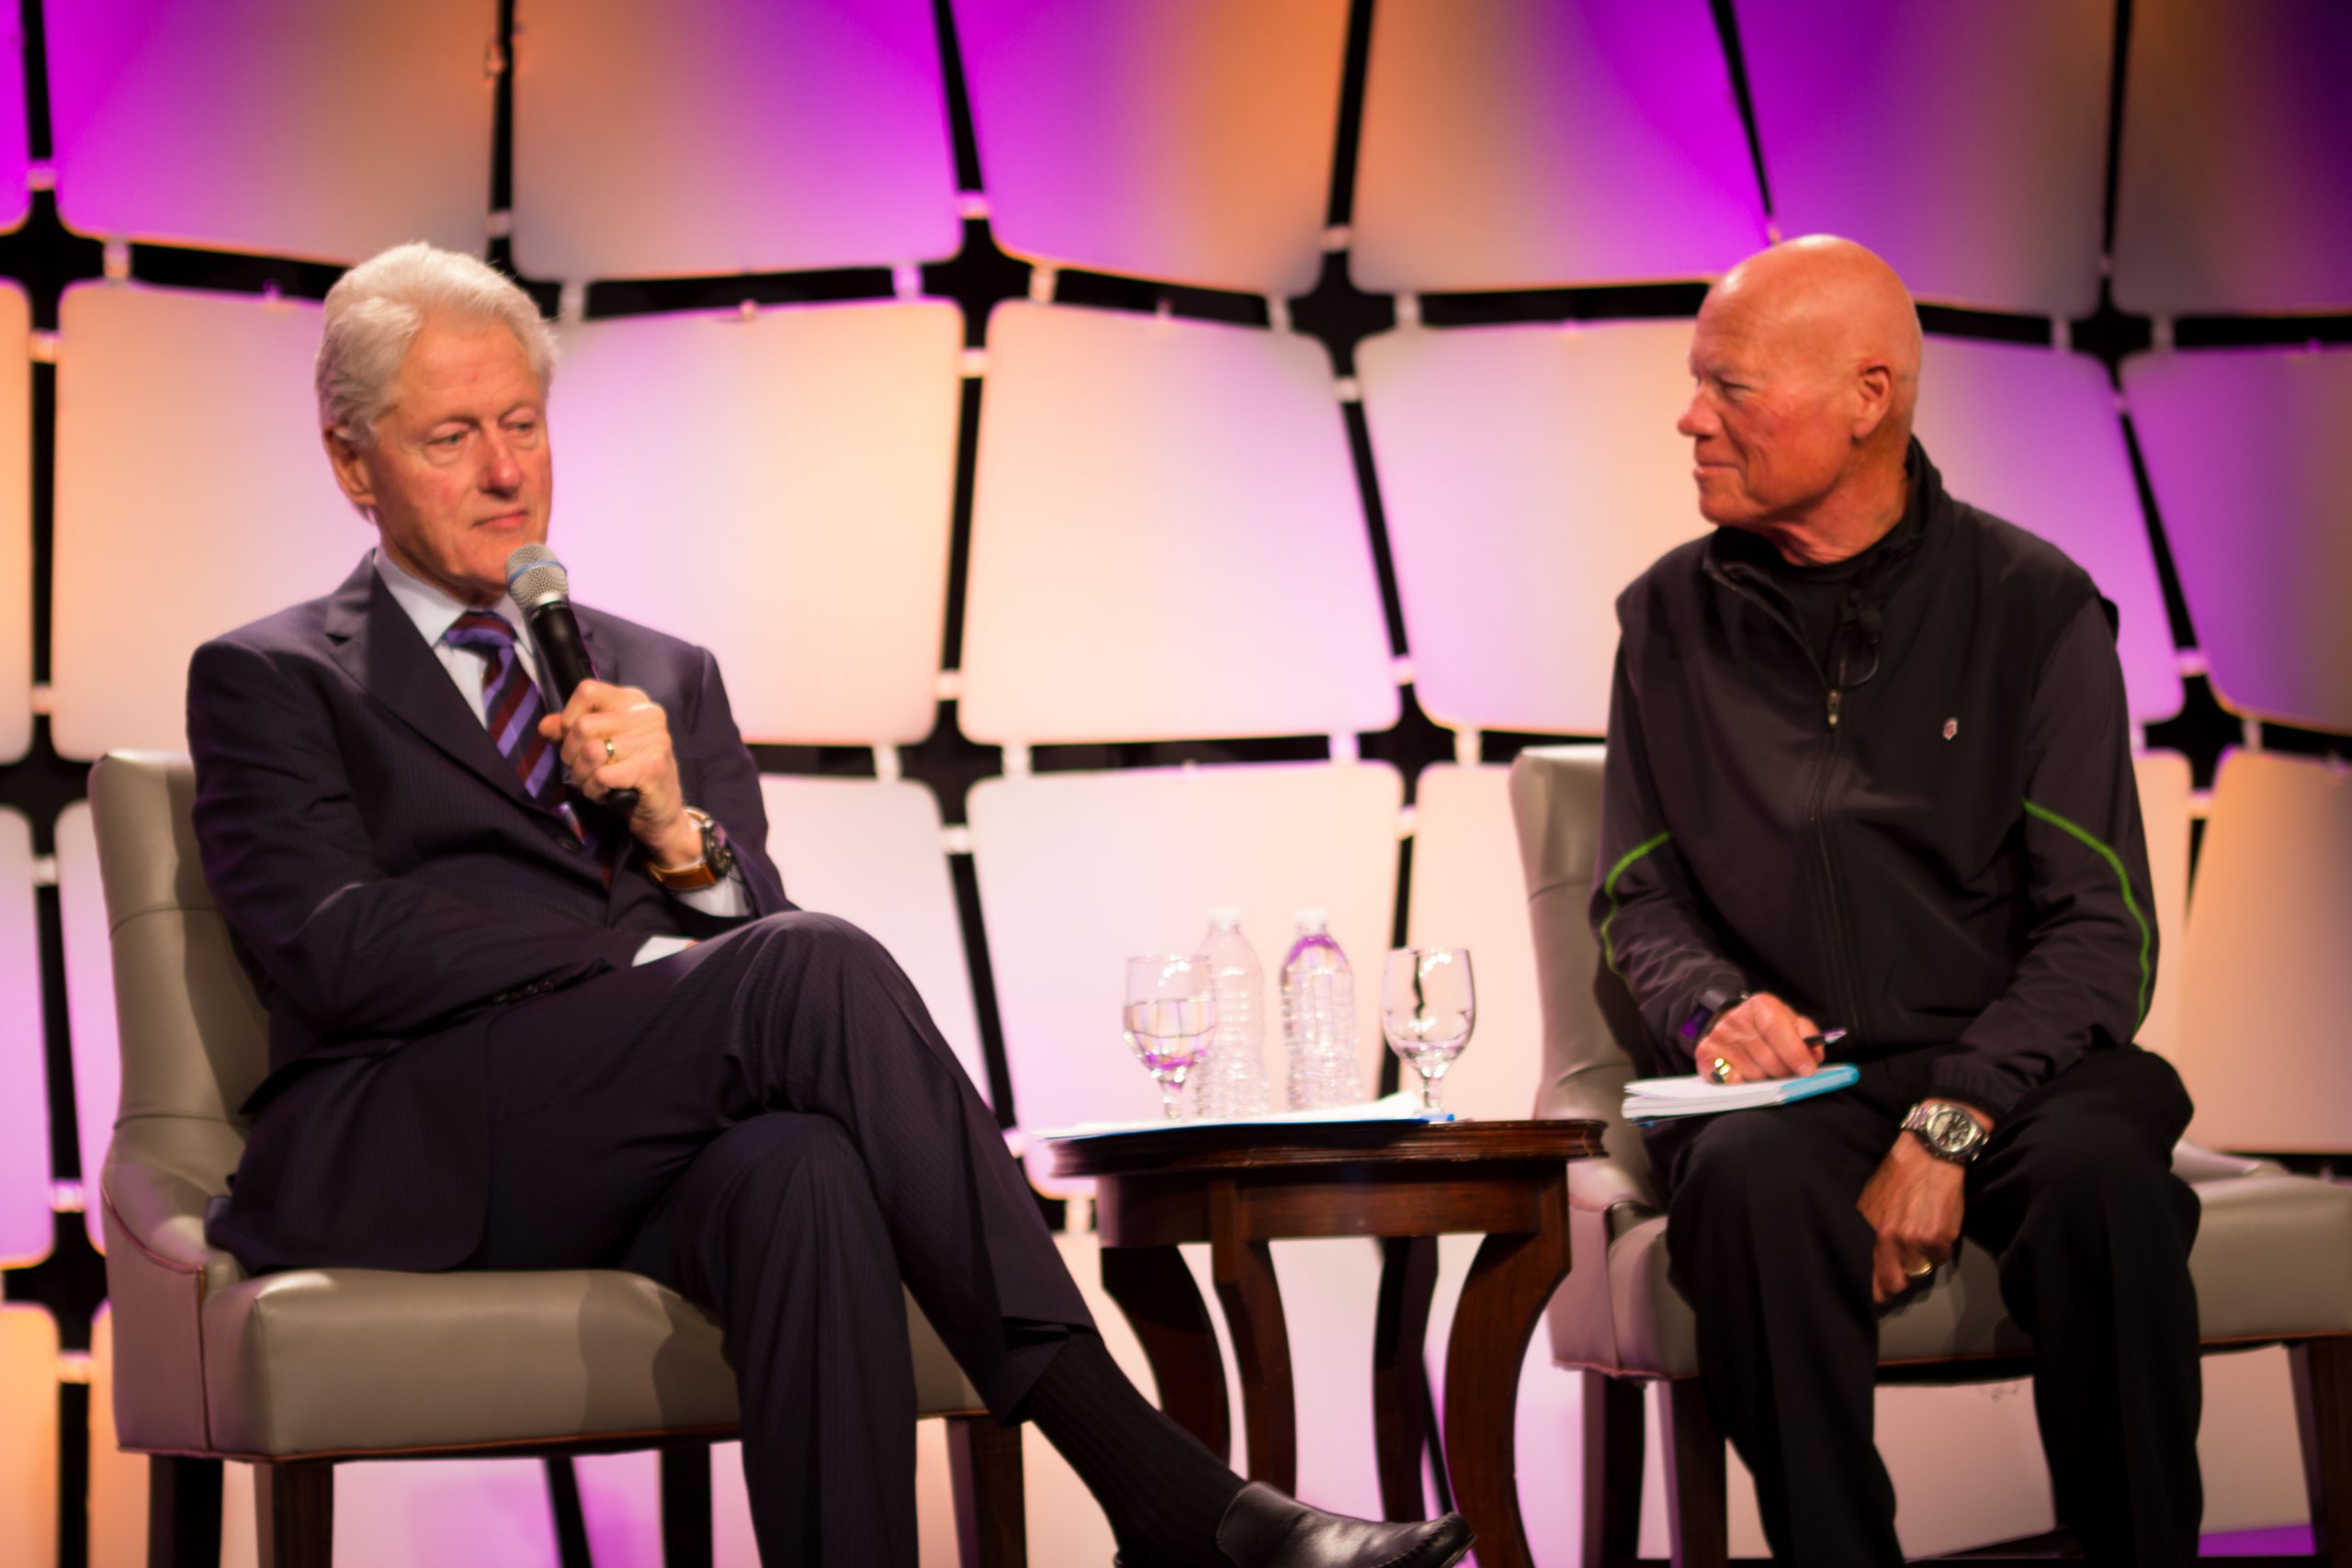 Bill Clinton and Inclusion